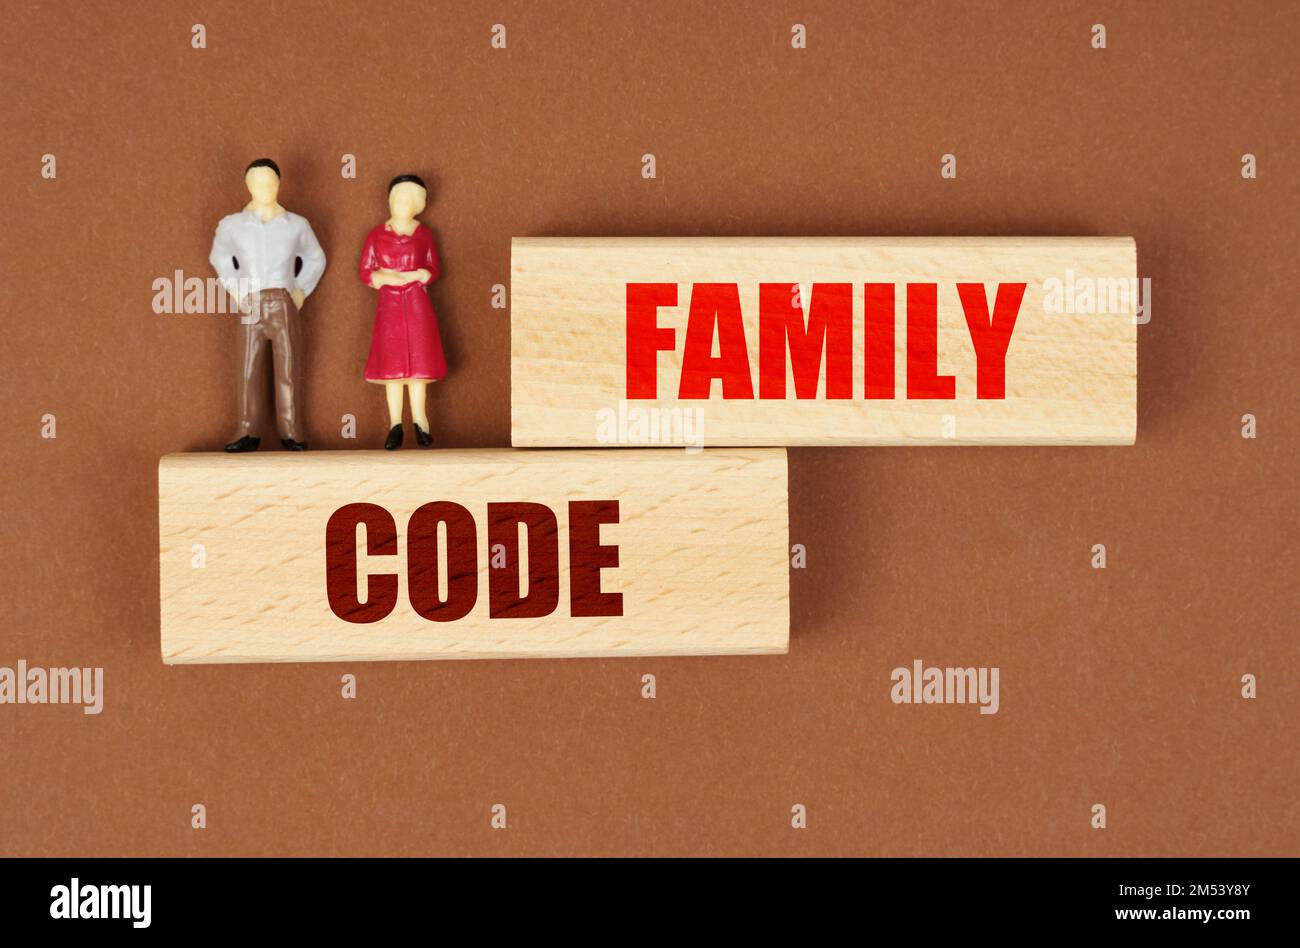 Concept d'entreprise et de personnes. Sur les blocs de bois avec l'inscription - Code de famille, il y a des figures miniatures de personnes. Banque D'Images